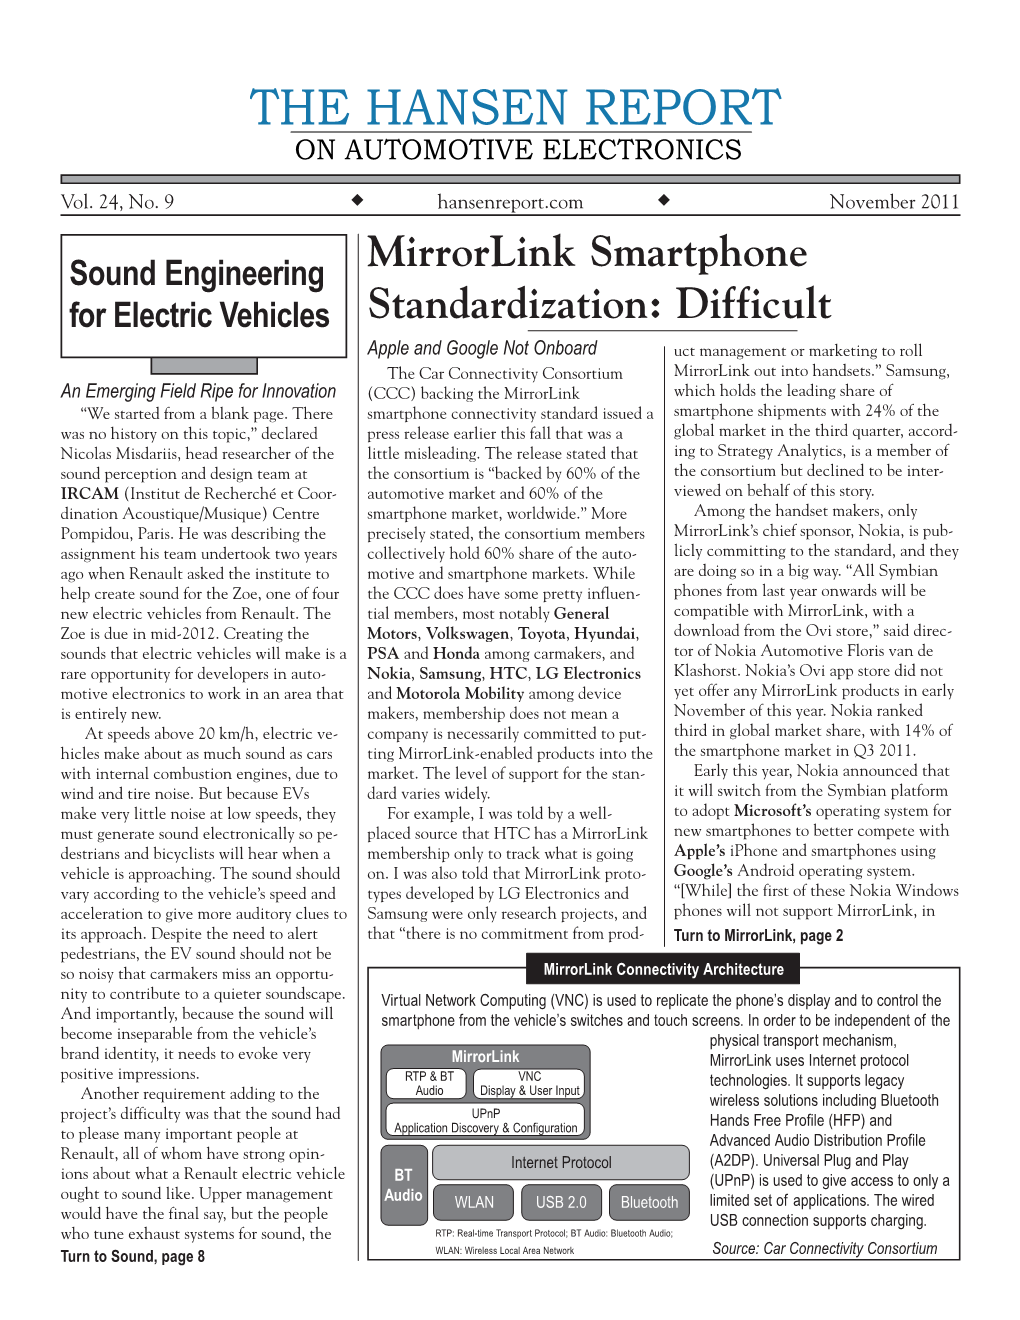 Mirrorlink Smartphone Standardization: Difficult